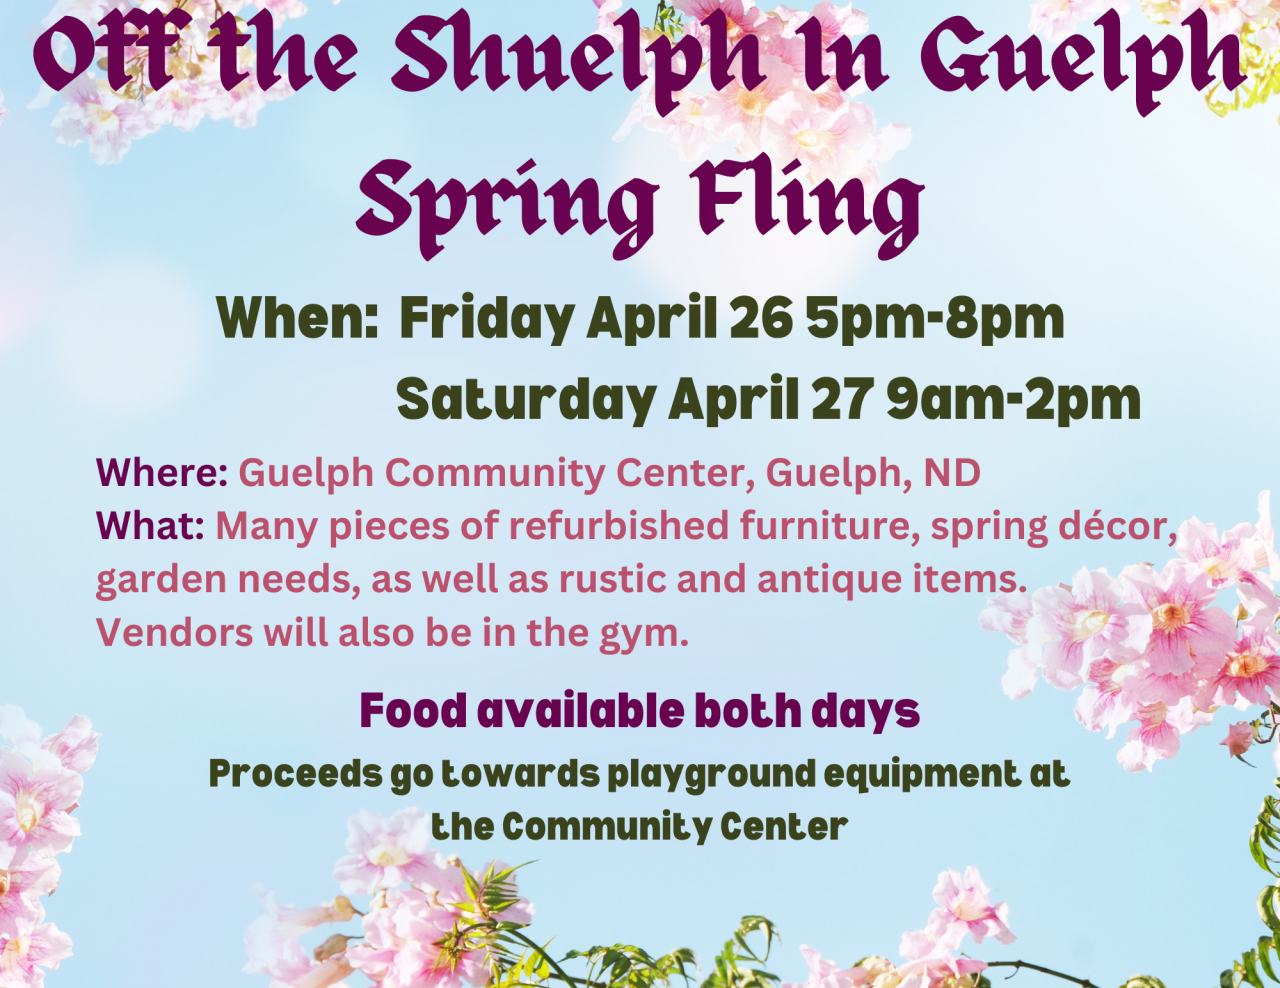 Off the Shuelph in Guelph Spring Fling